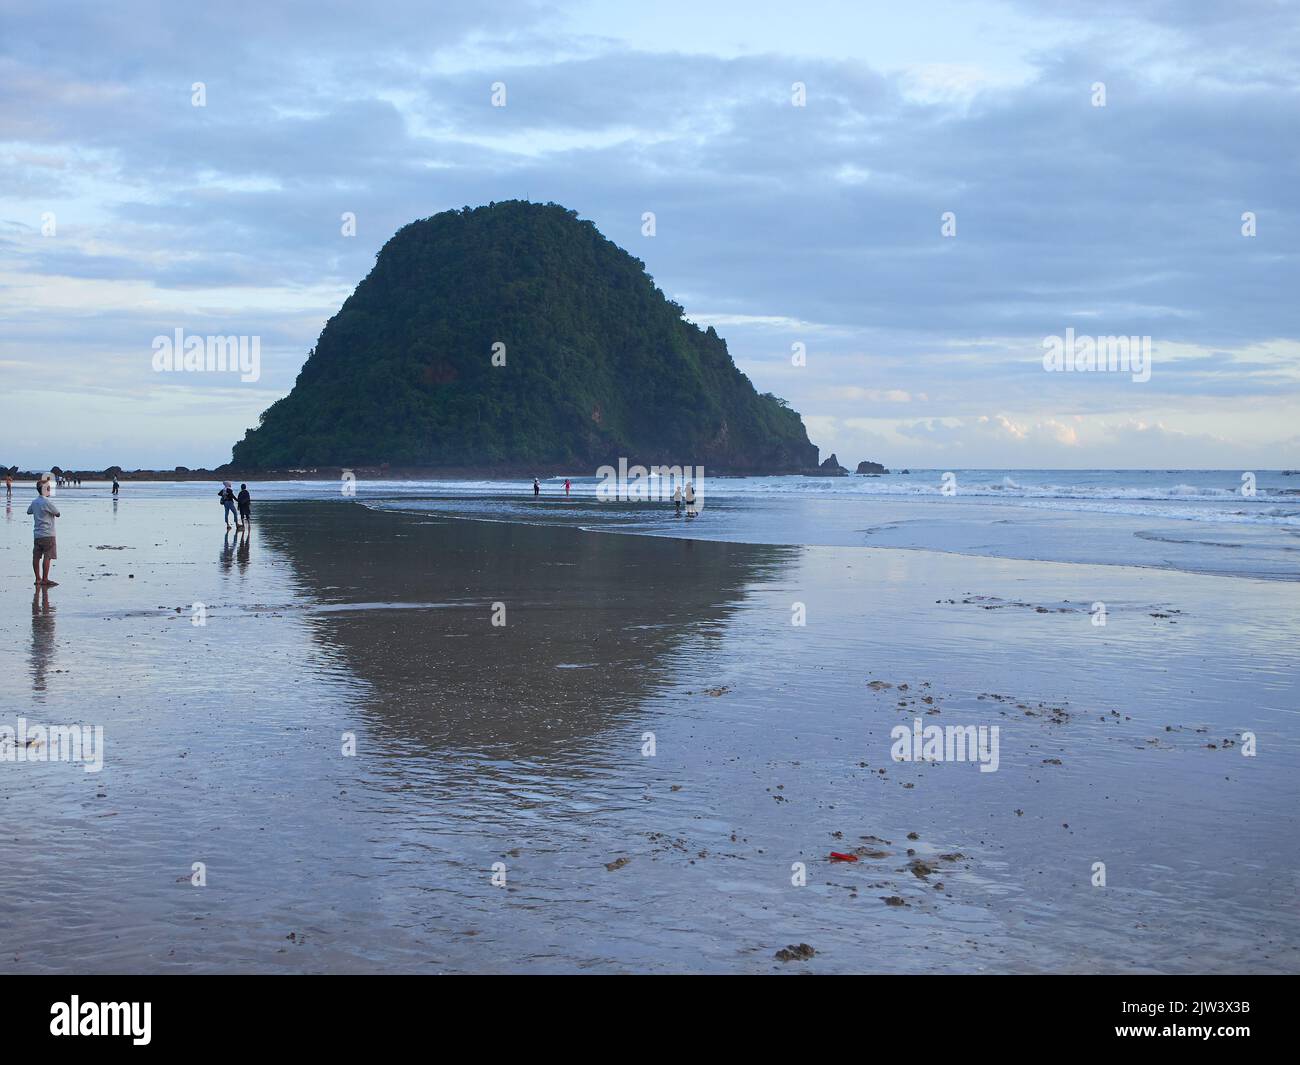 Sembra che i turisti stiano godendo l'atmosfera in una destinazione turistica sulla spiaggia di Red Island a Banyuwangi Foto Stock